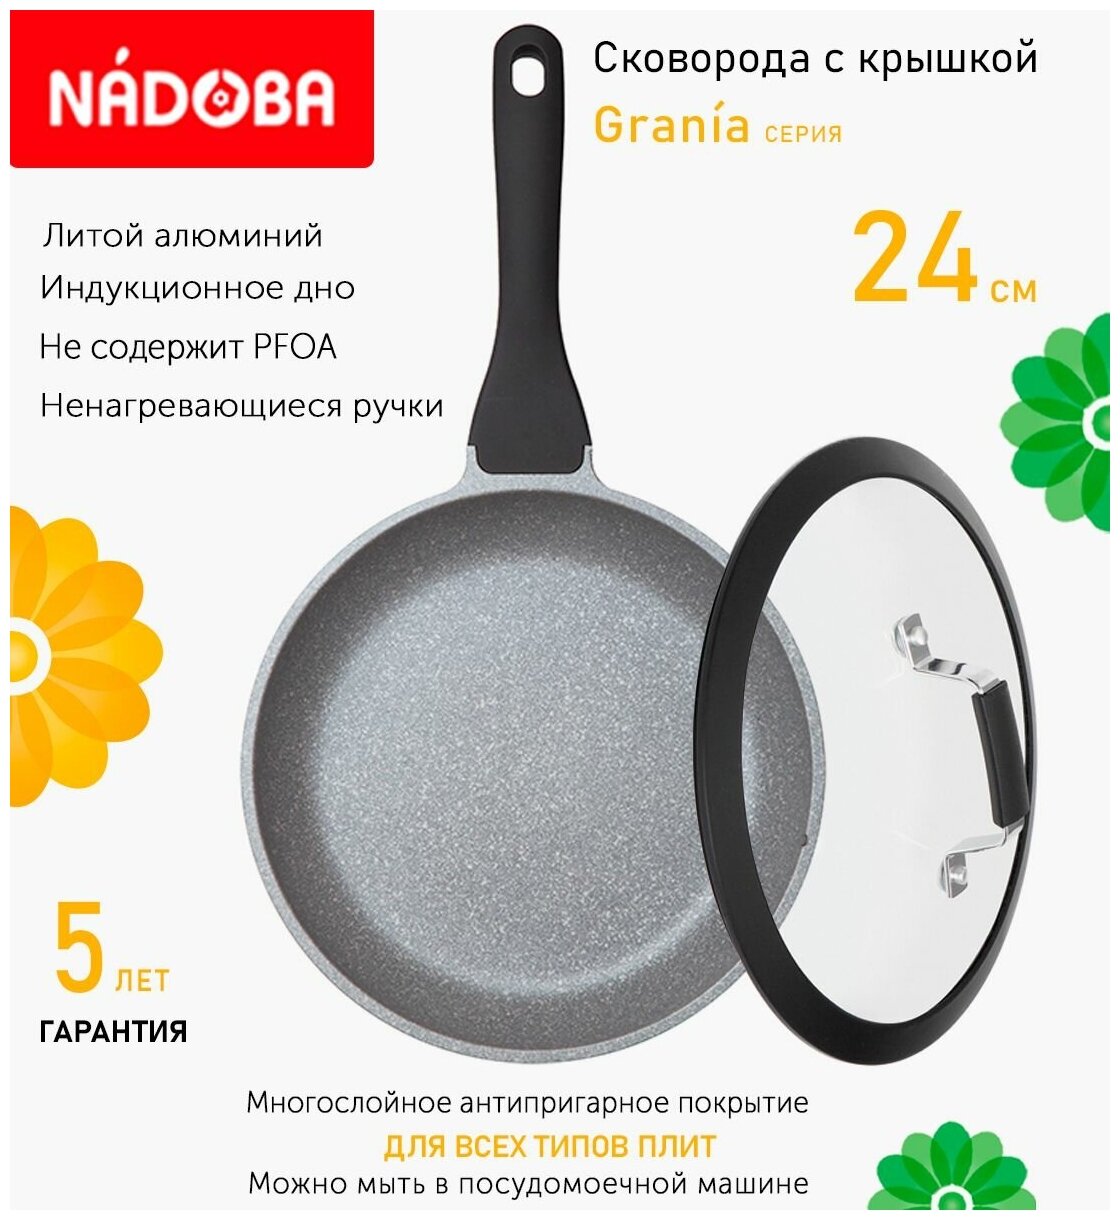 Сковорода с крышкой NADOBA 24см, серия "Grania" (арт. 728118/751413)